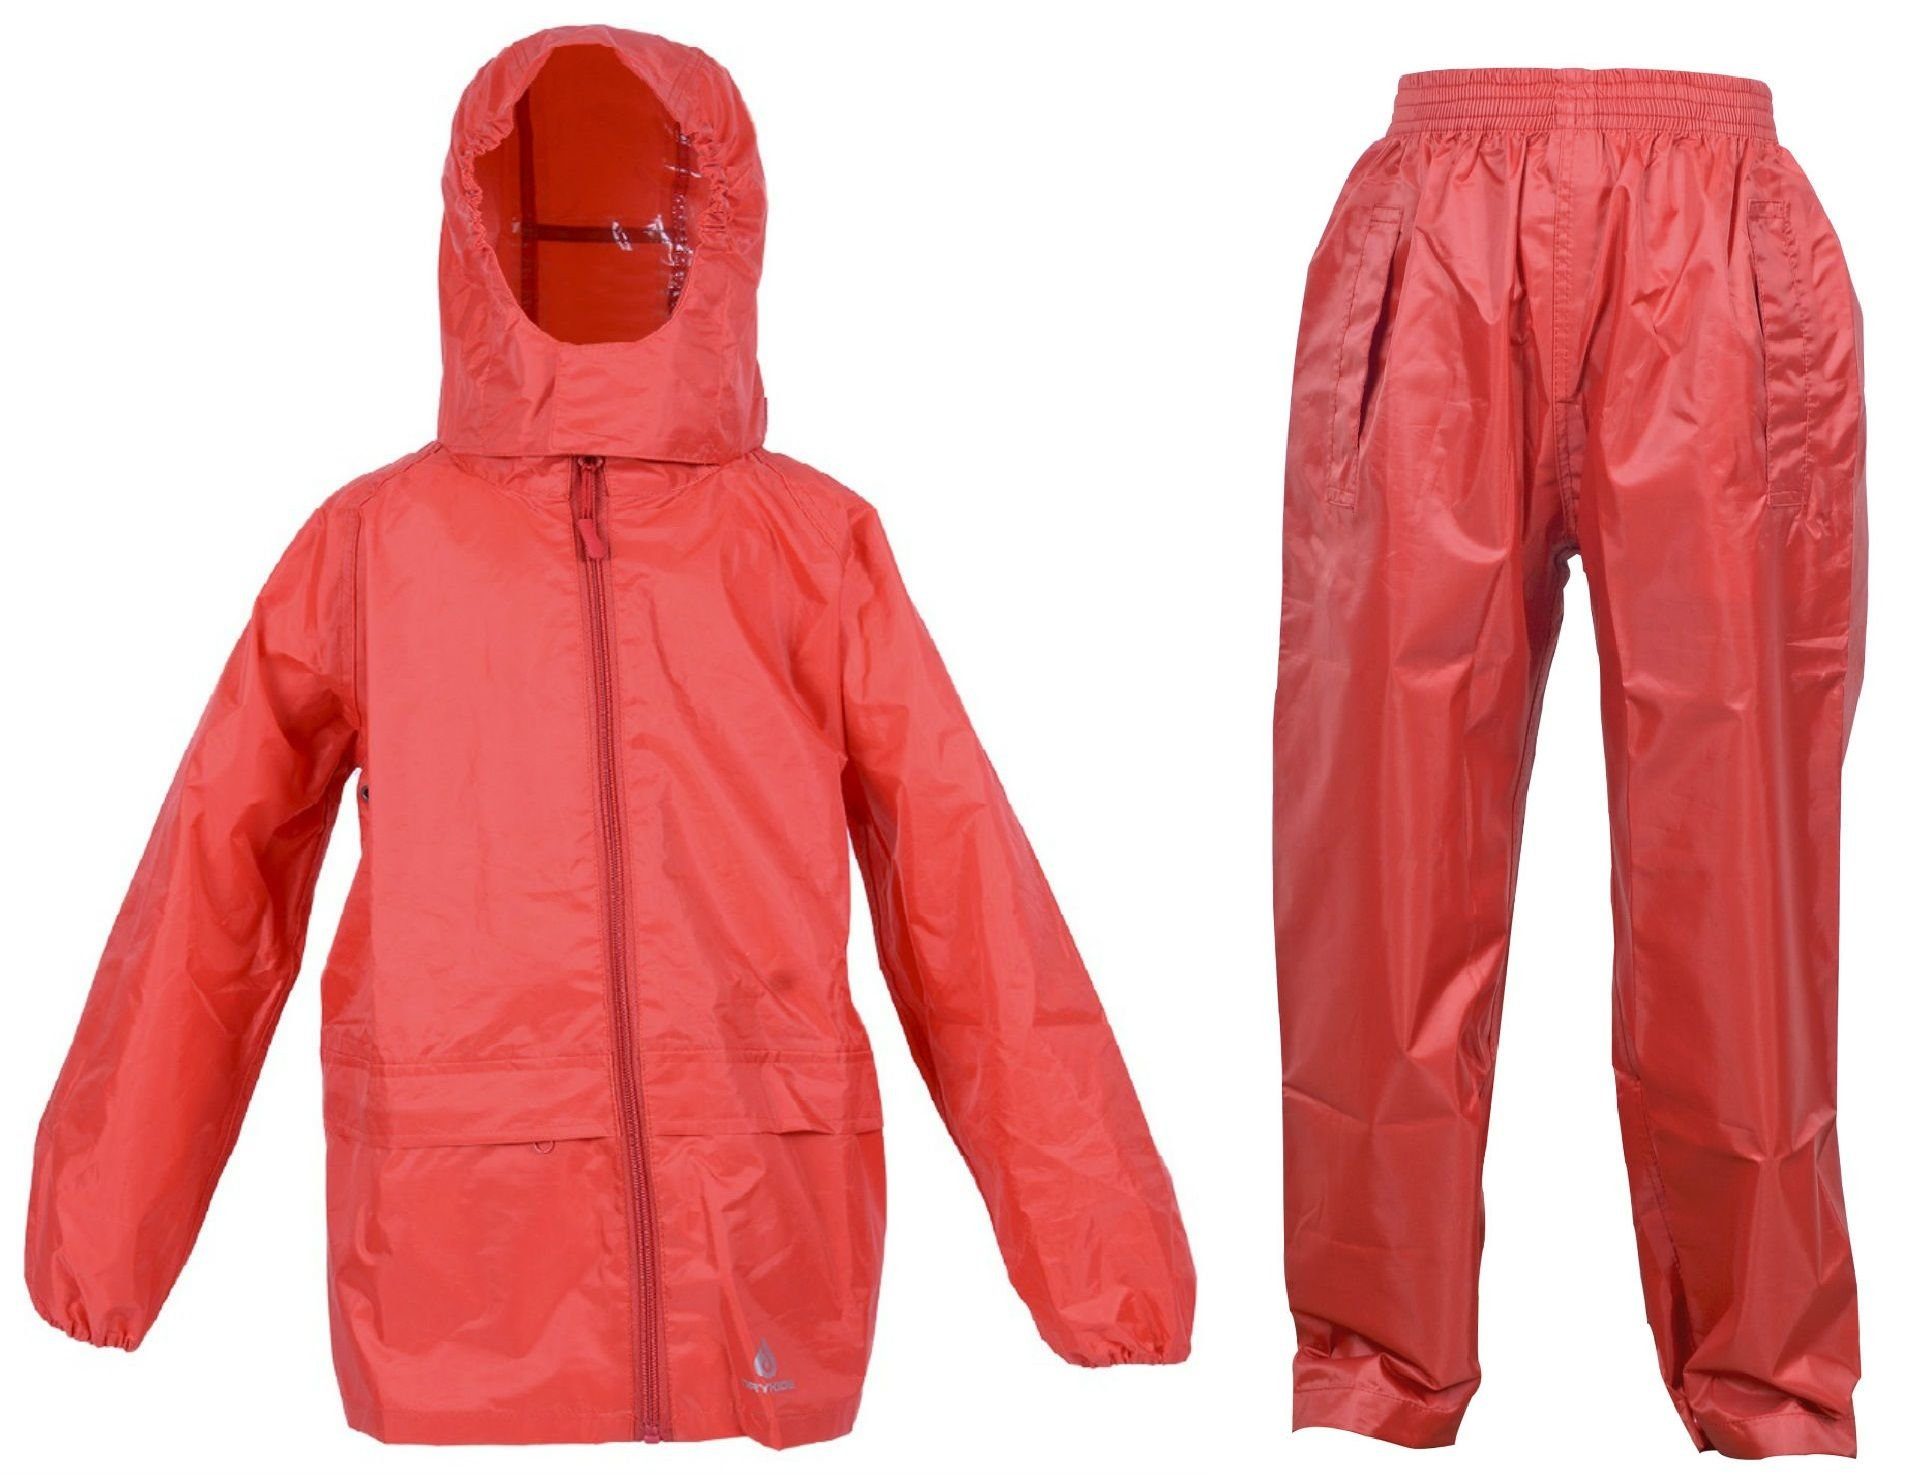 DRY KIDS Regenanzug (1-tlg), Wasserdichtes Kinder Regenanzug-Set, reflektierende Regenbekleidung Rot